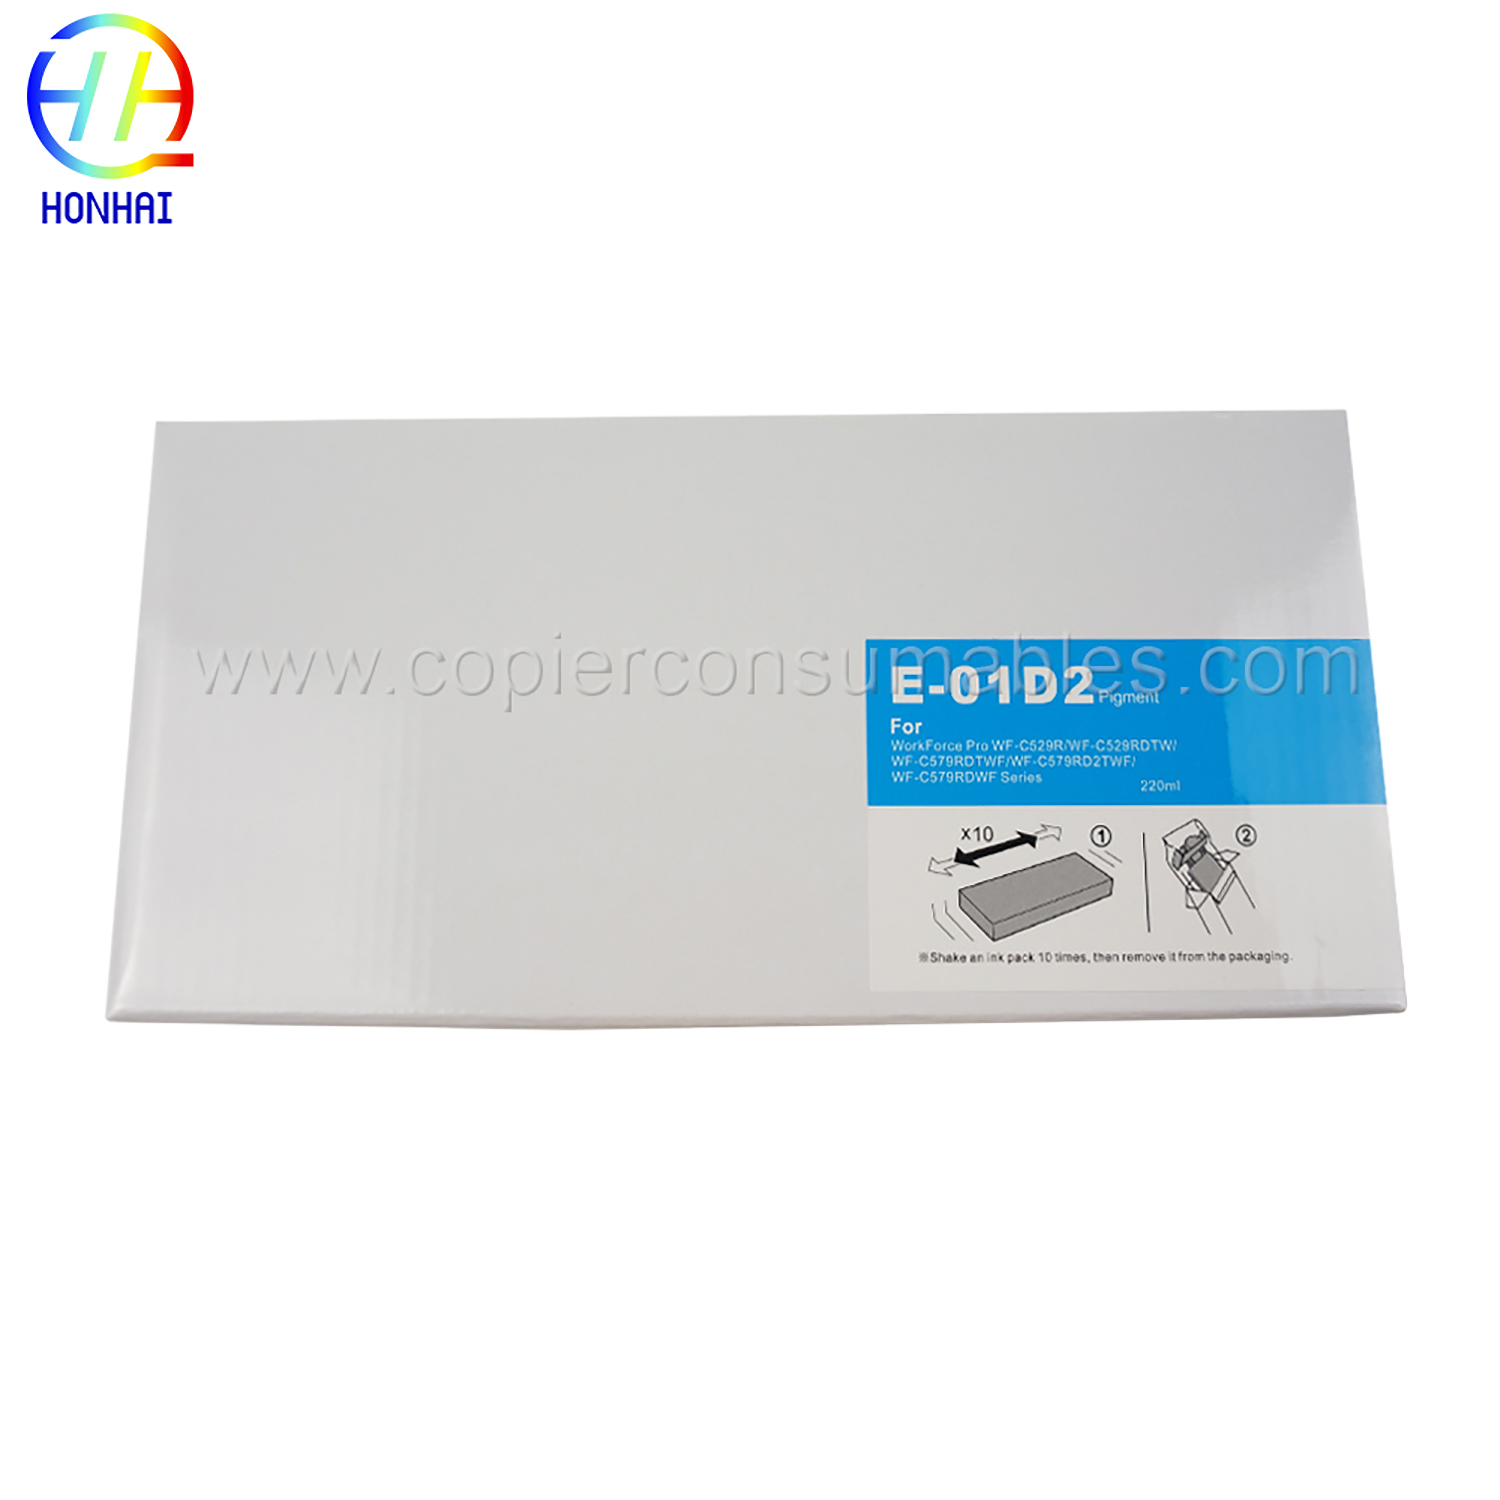 Kantong tinta pikeun Epson WorkForce Pro WF-C529RWF-C529RDTWWF-C579RDTWFWF-C579RD2TWFWF-C579RDWF Series T01D2 (C) 220 ml (1) 拷贝